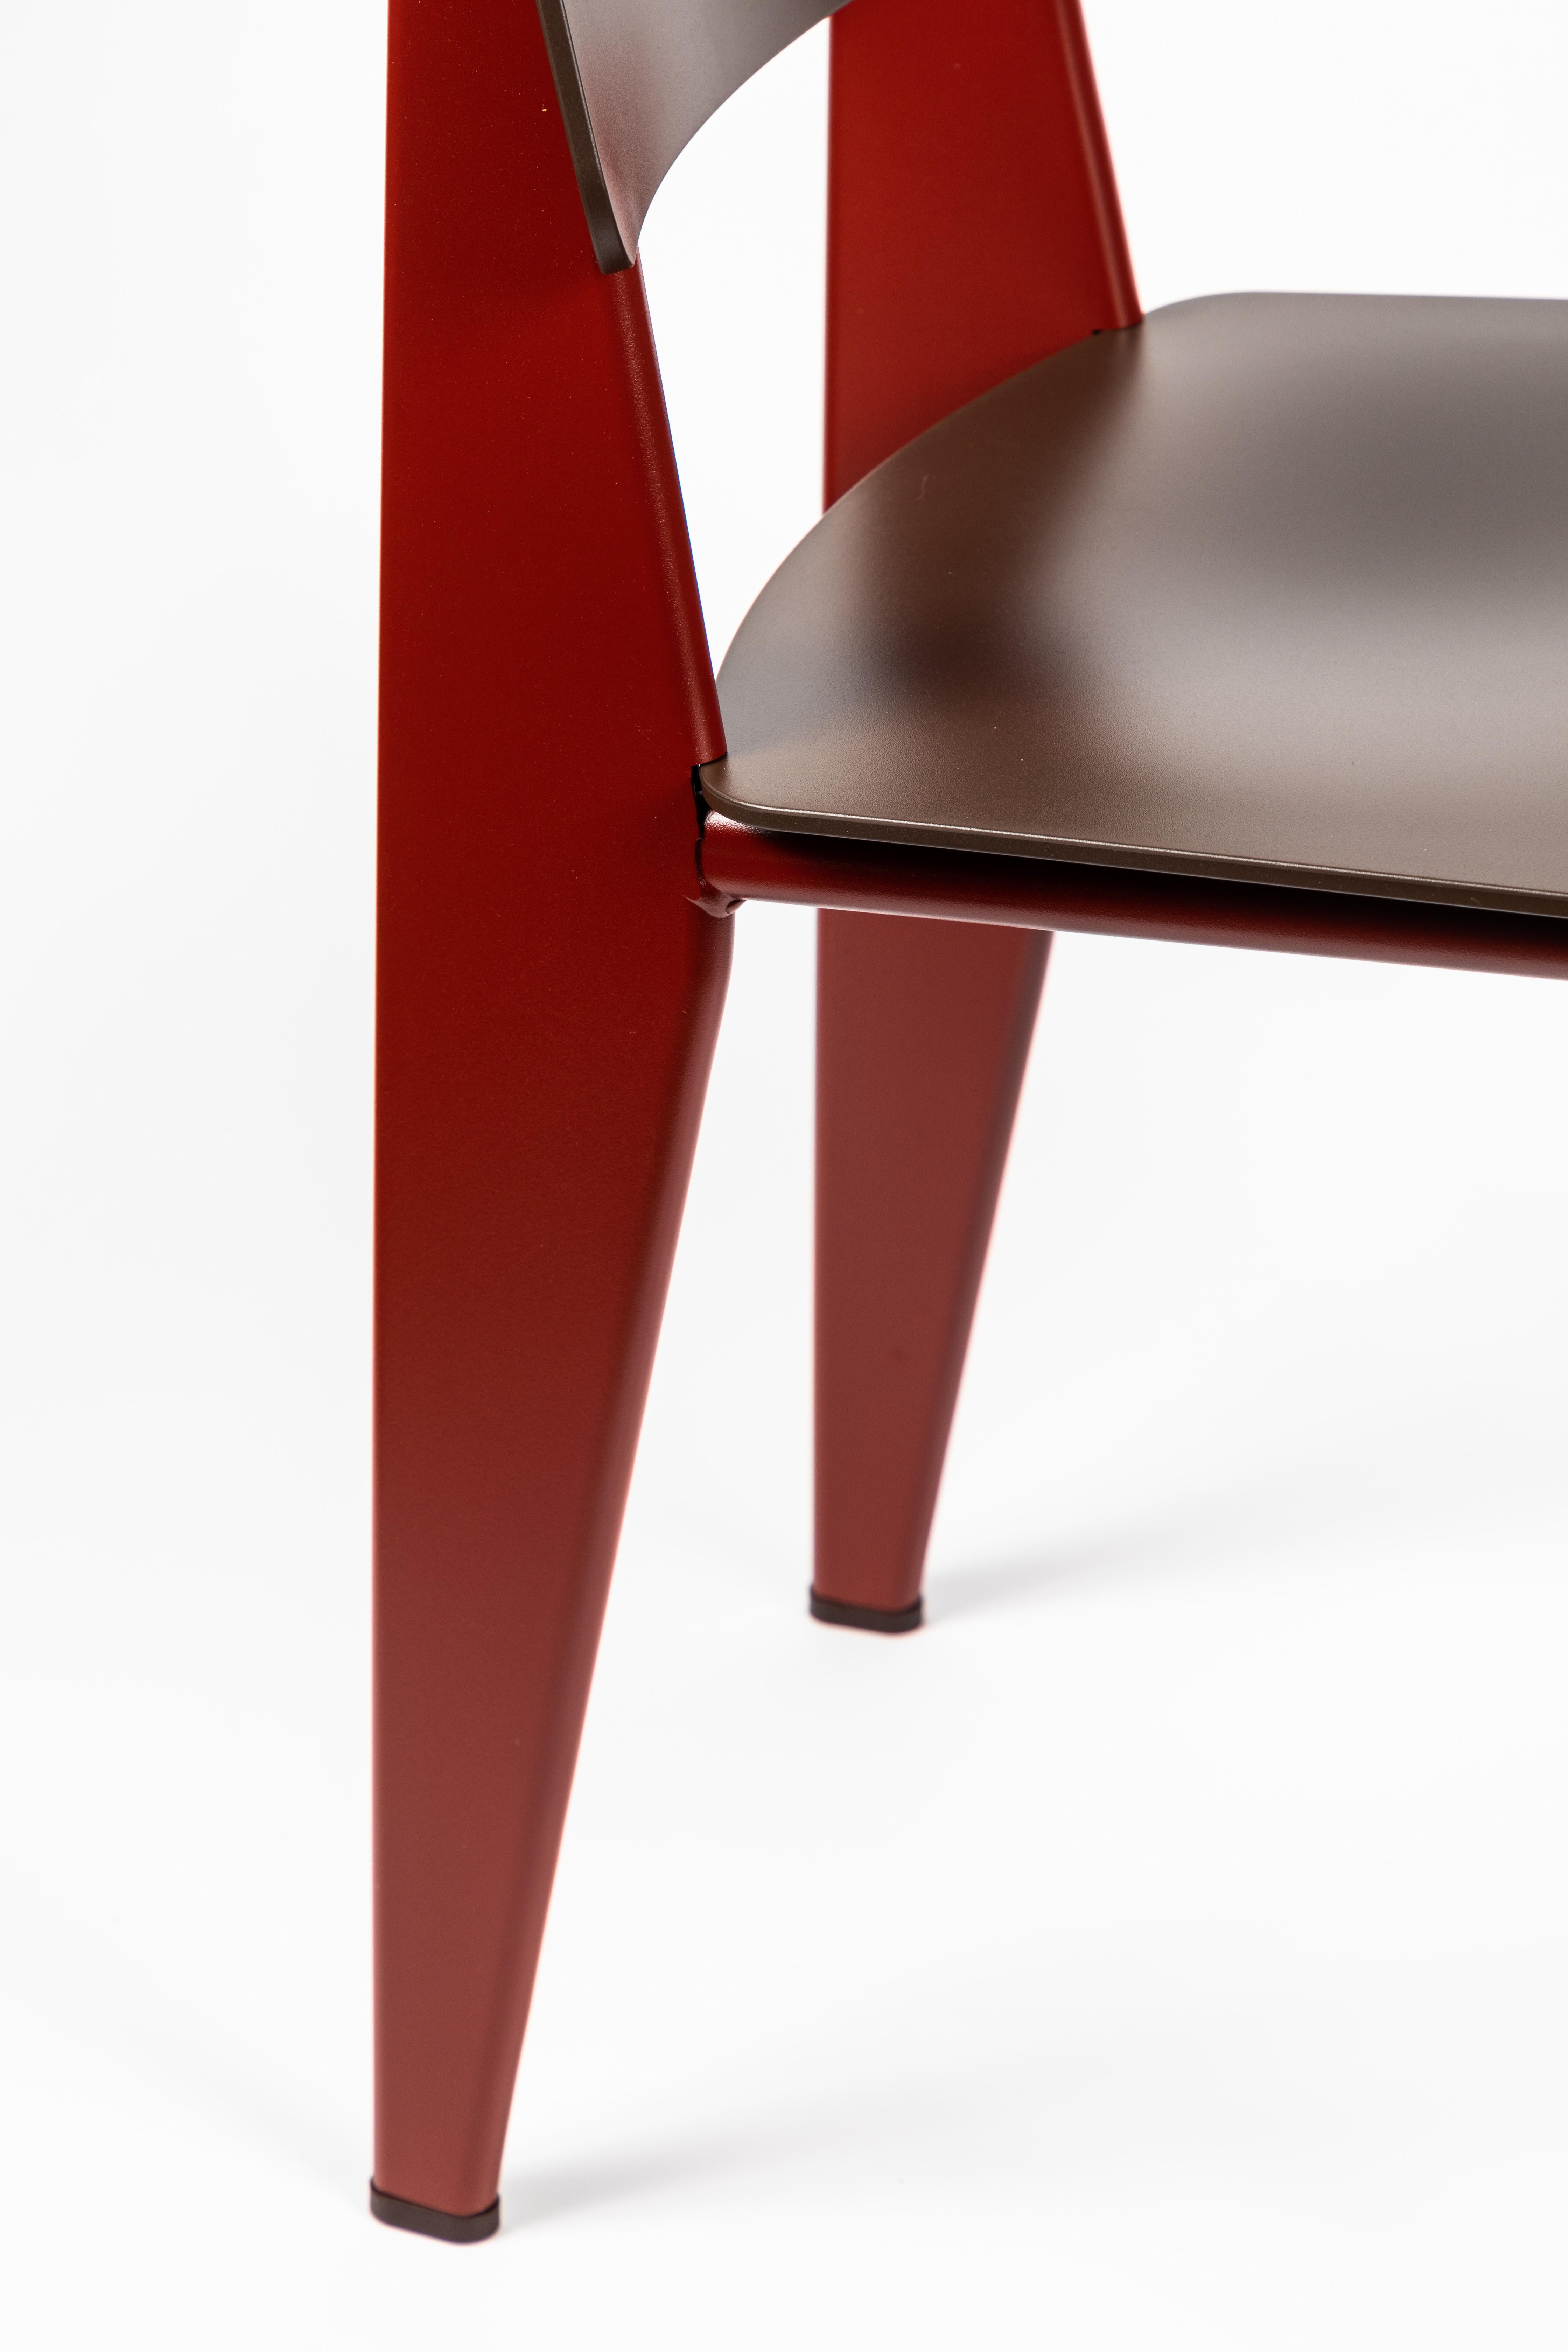 6 Stühle Jean Prouvé Standard SP in Teak Brown und Rot für Vitra 4